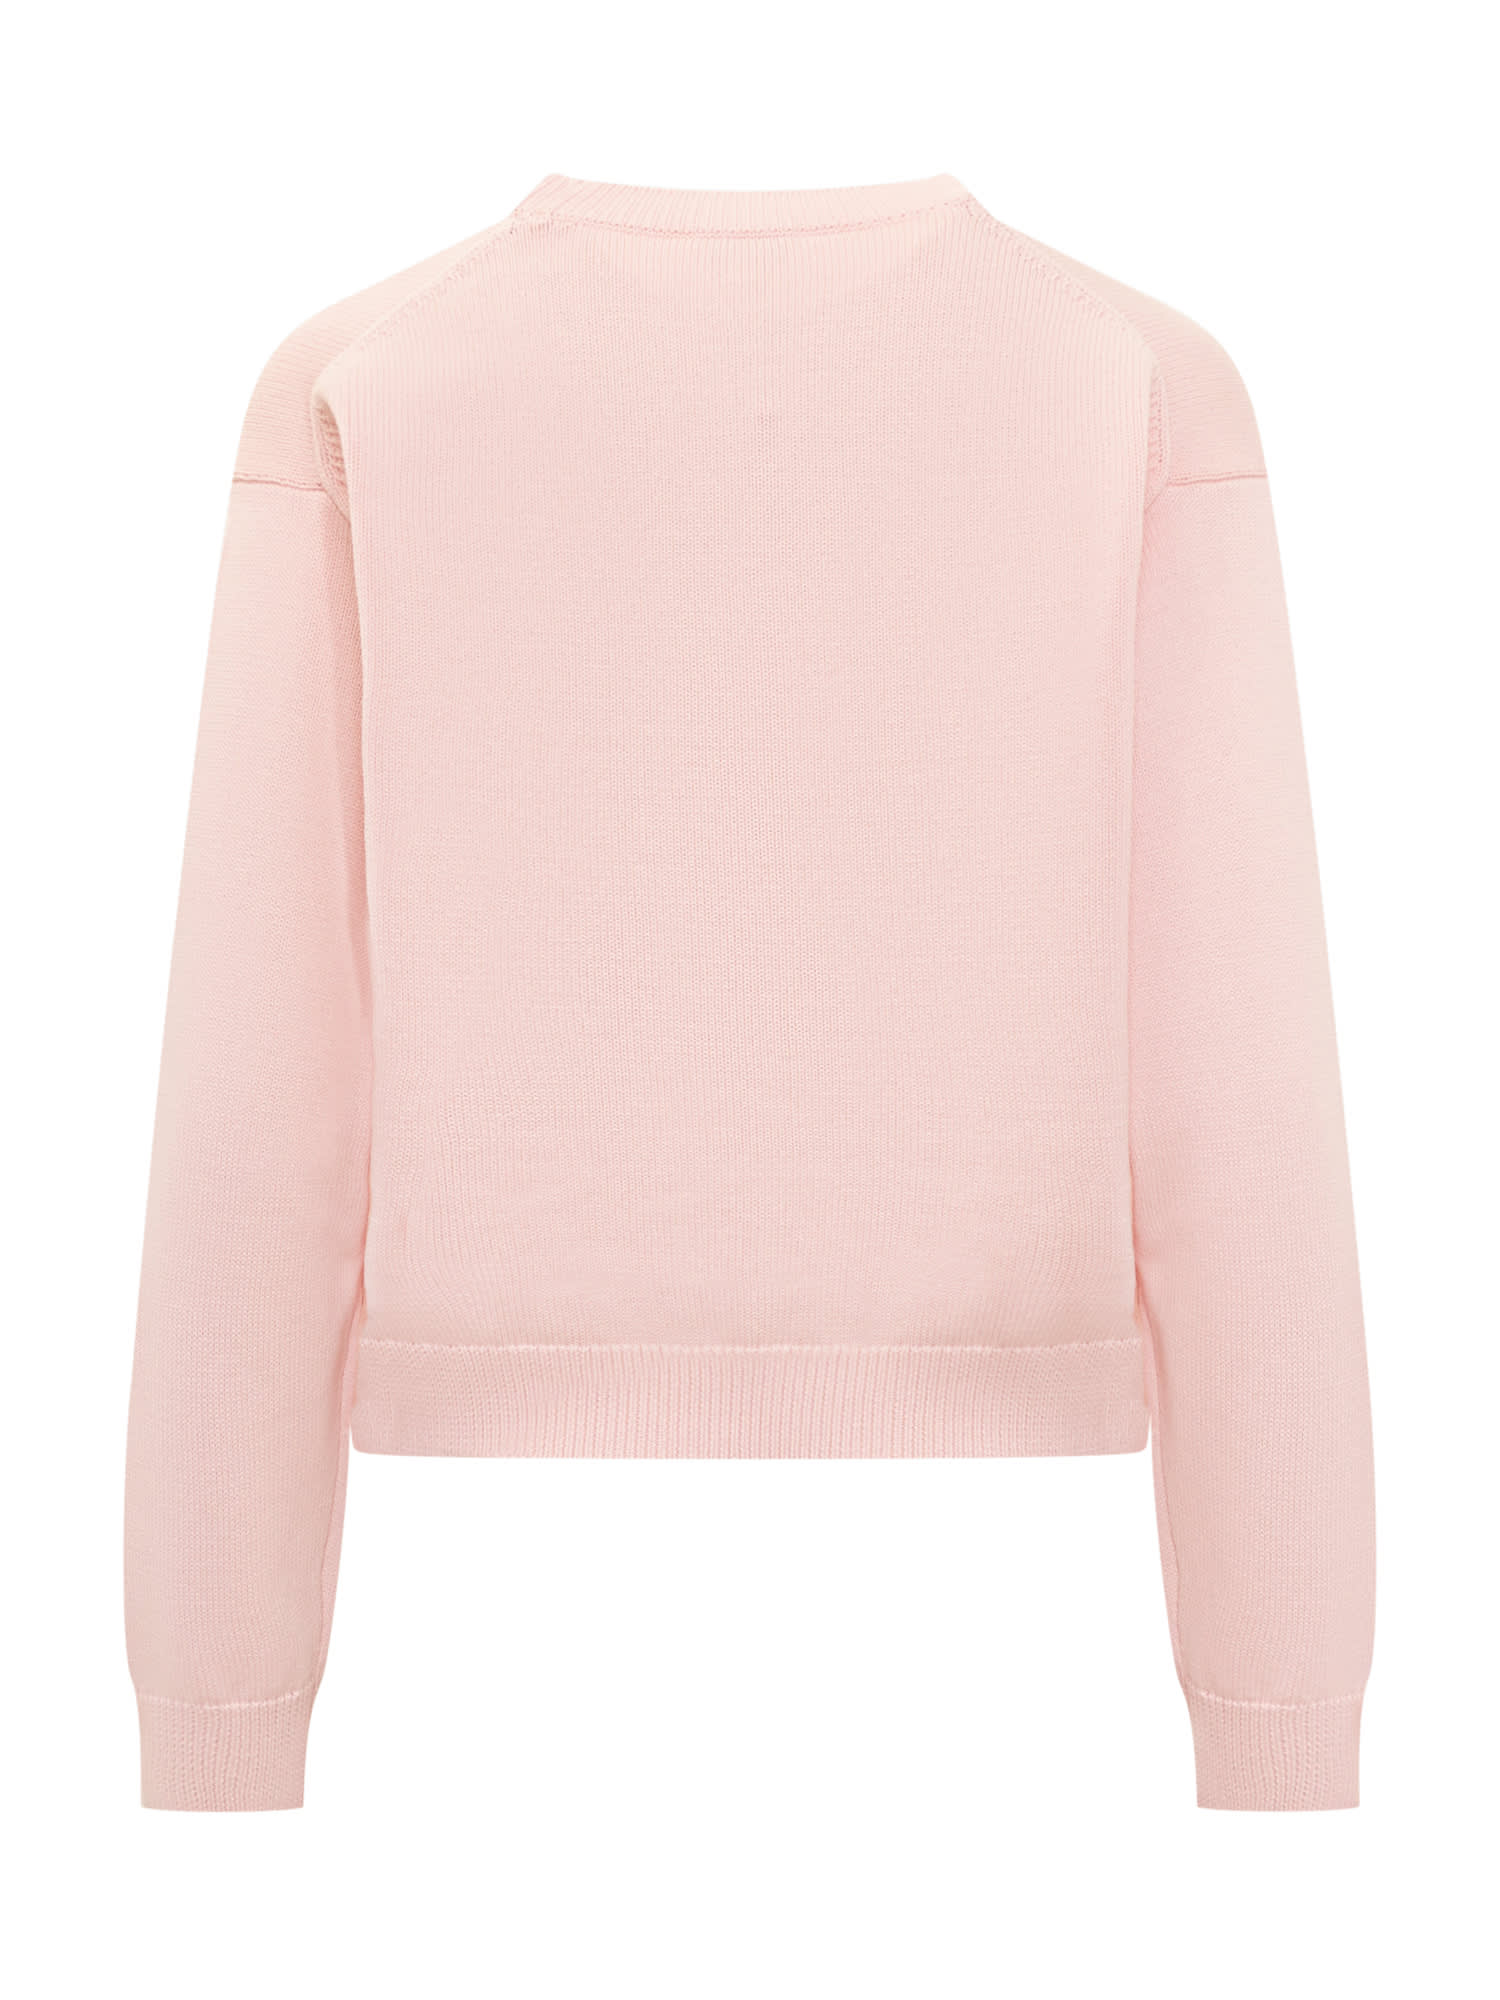 Shop Kenzo Boke Flower Sweater  In Pink